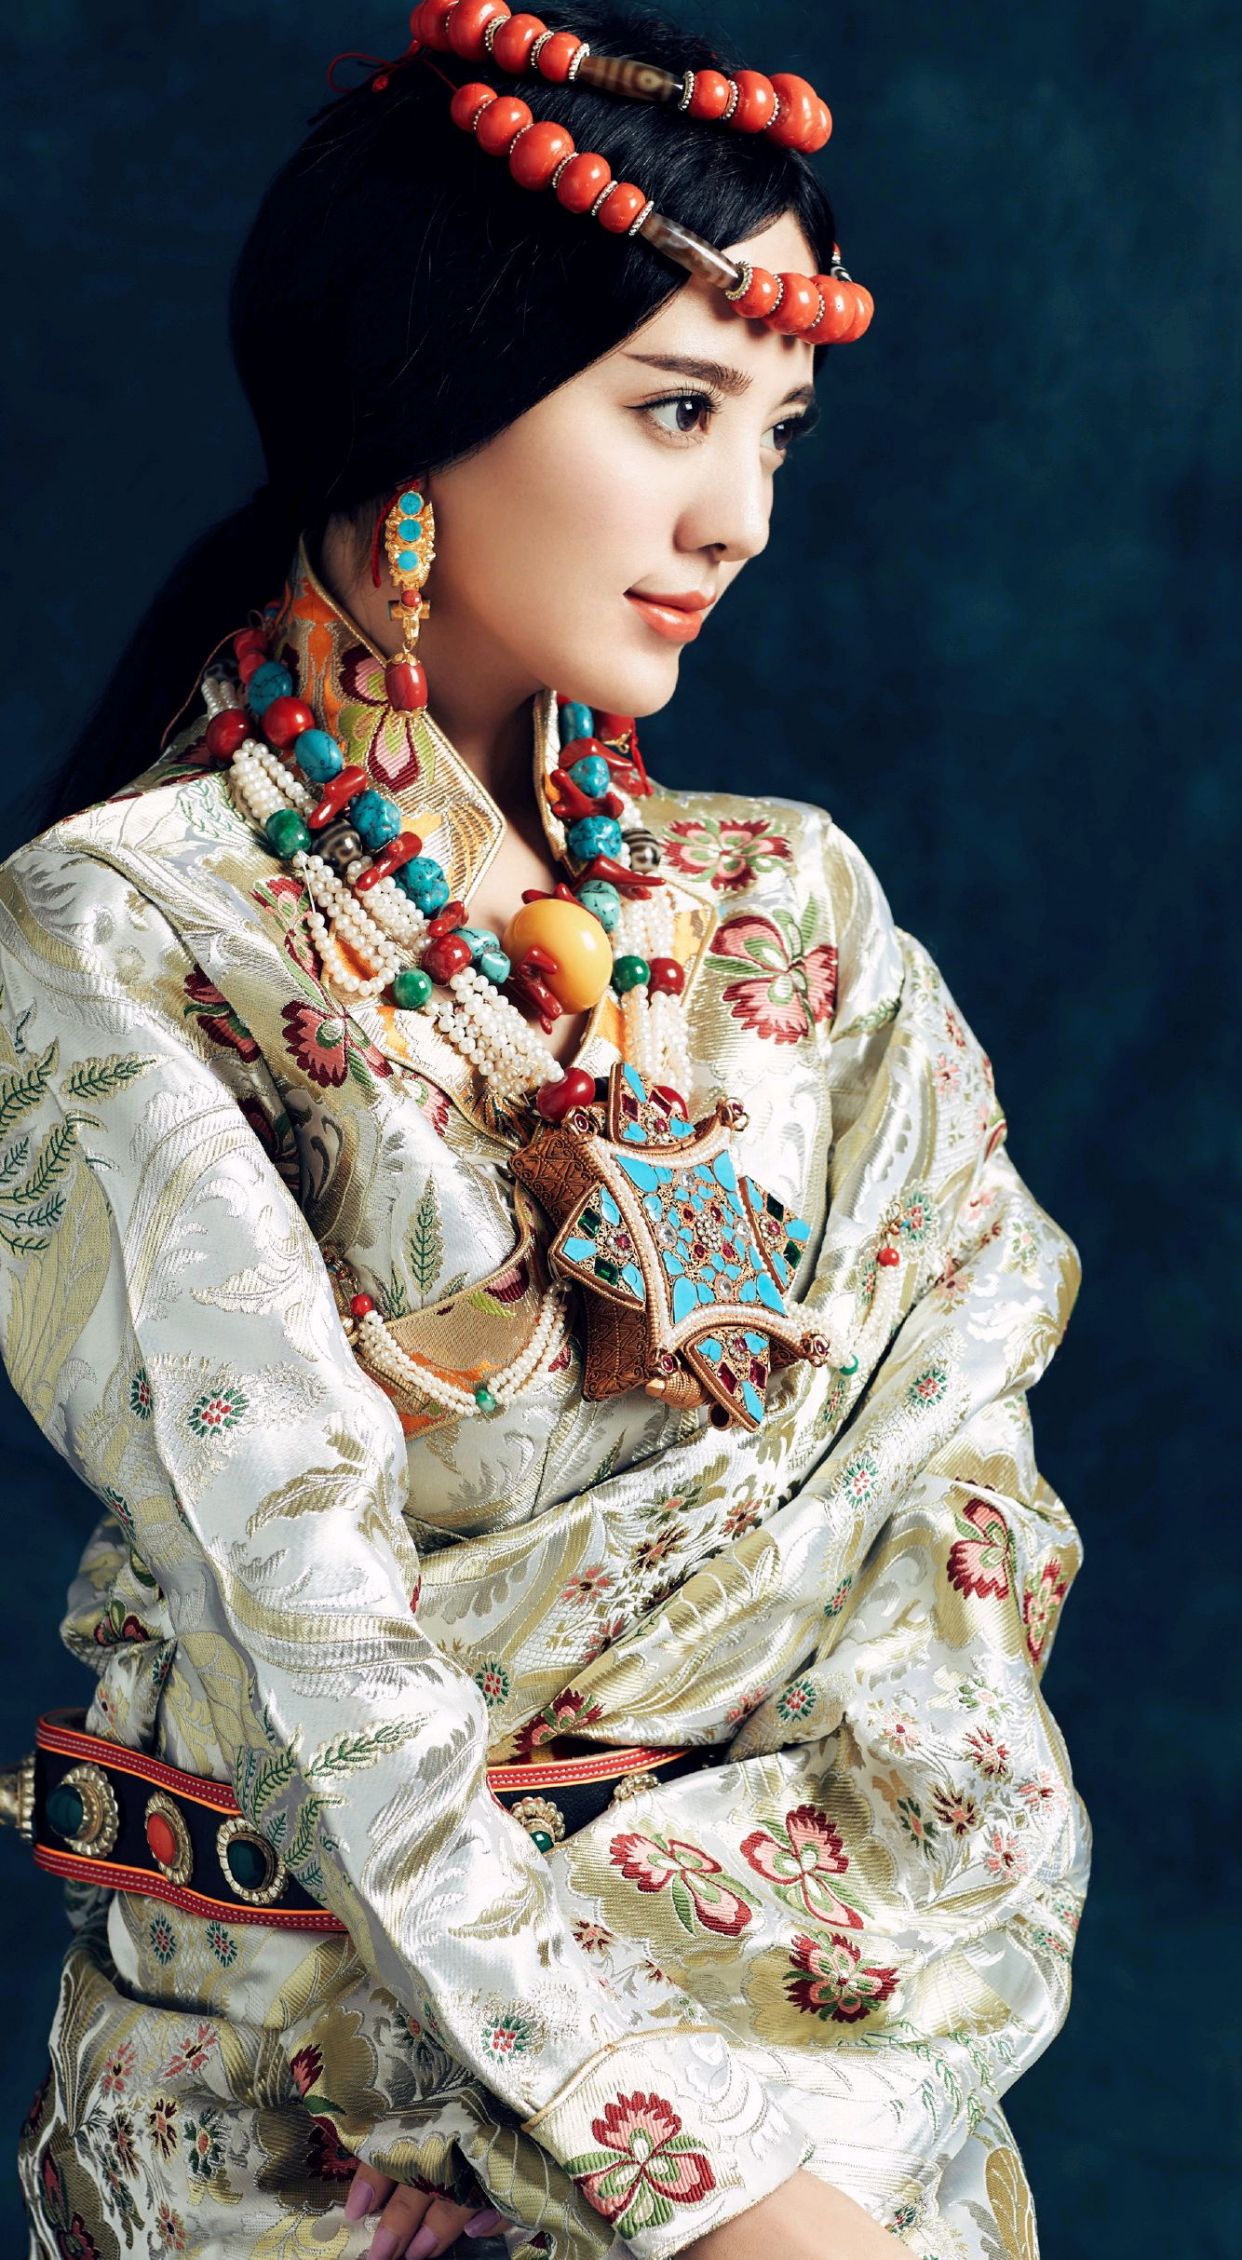 藏族歌手阿兰高清写真美图,人美歌甜,气质独特